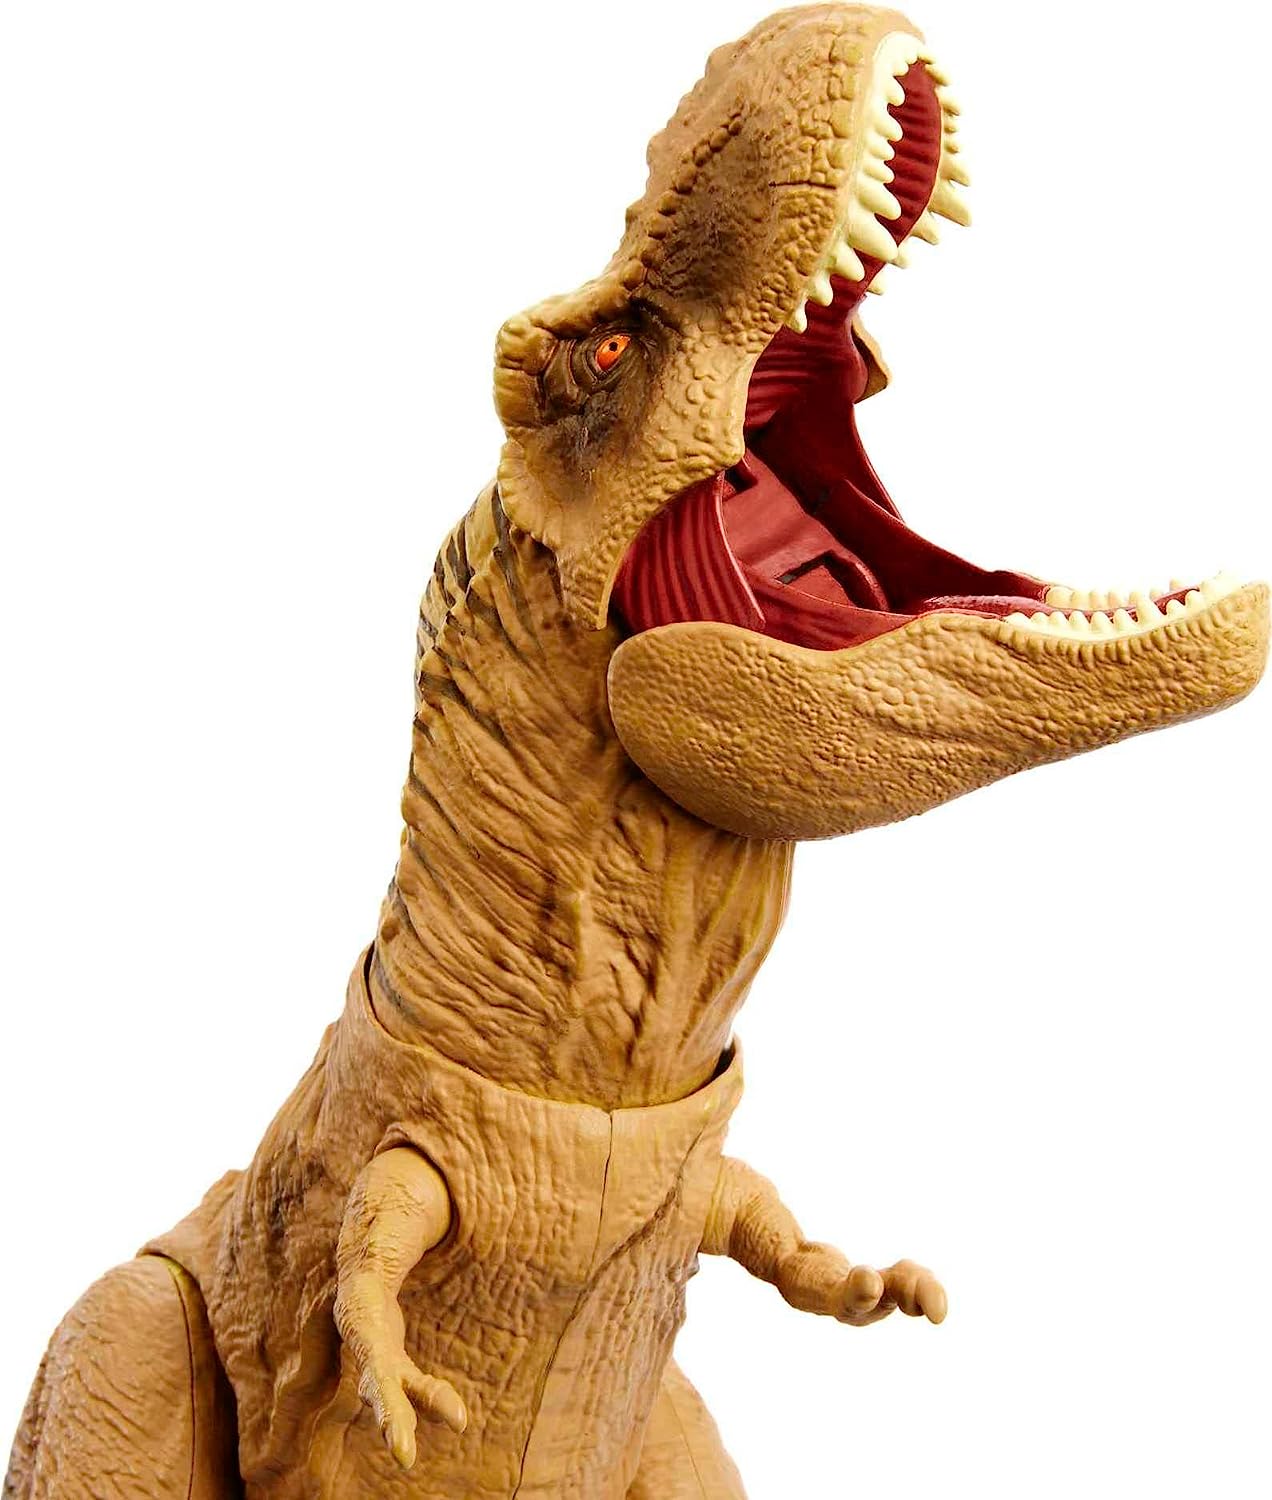 Jurassic World Hunt n Chomp T-Rex